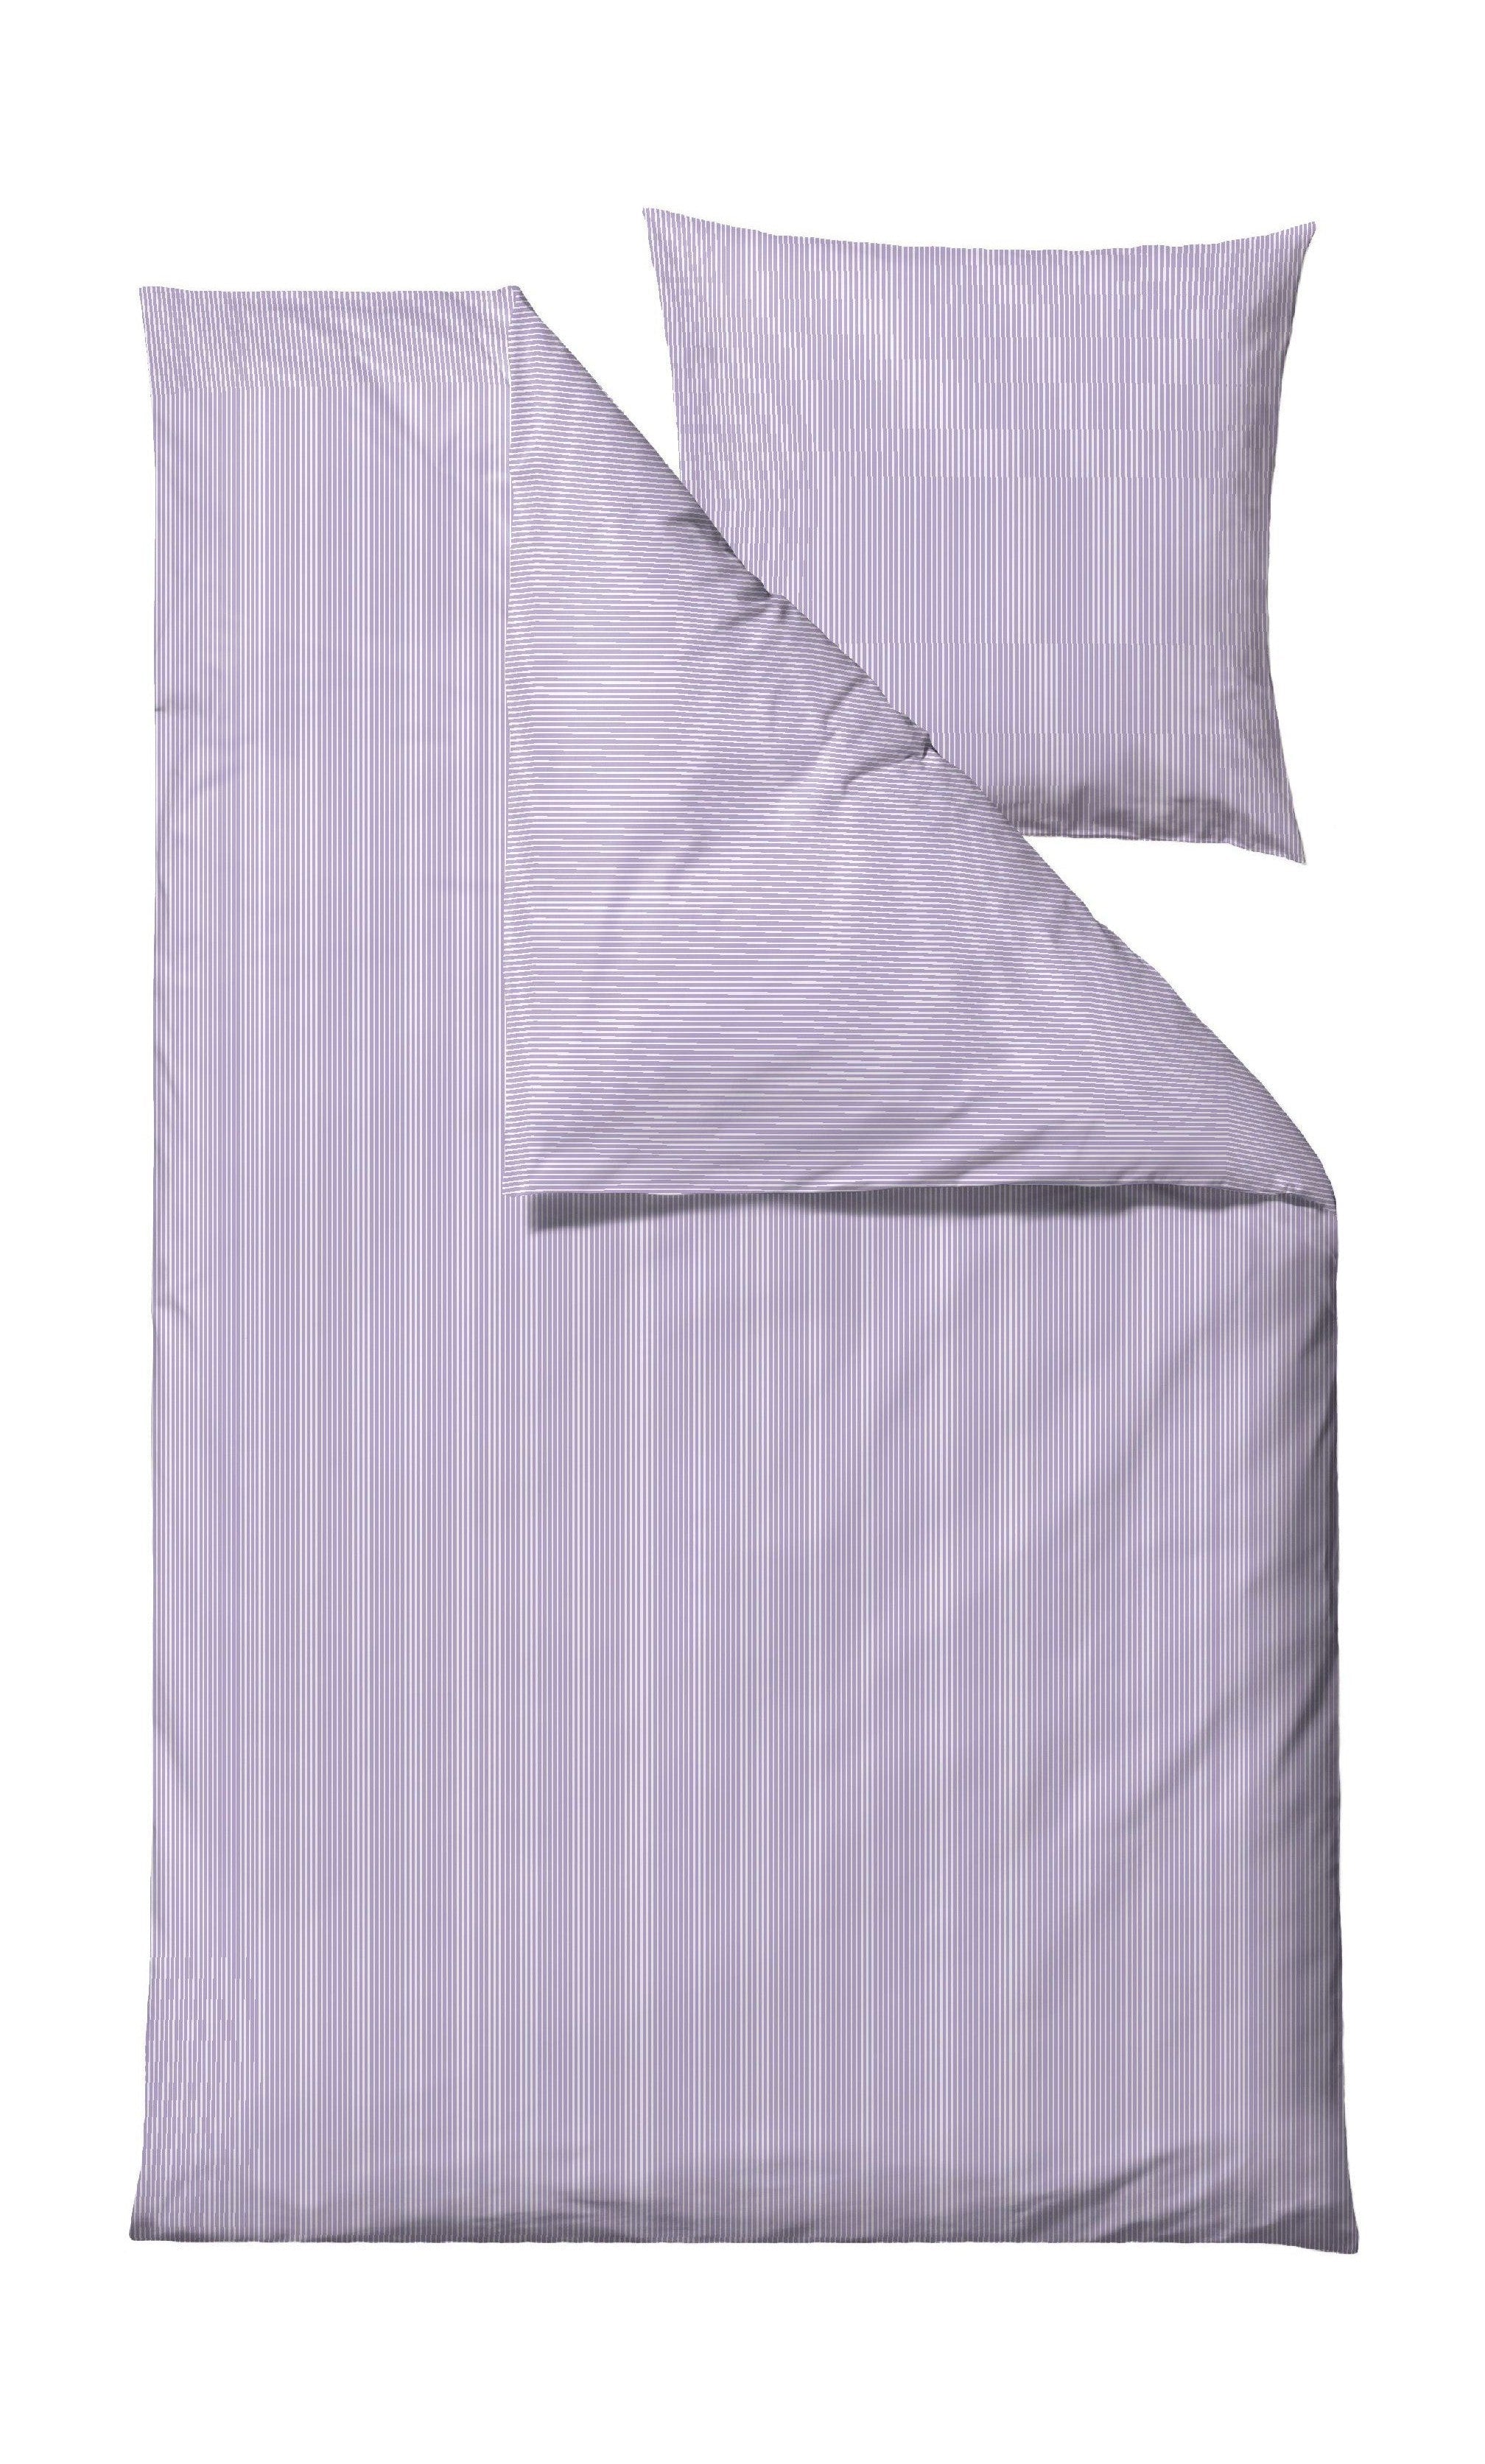 Södahl Munter sengelinned 140 x 200 cm, lavendel